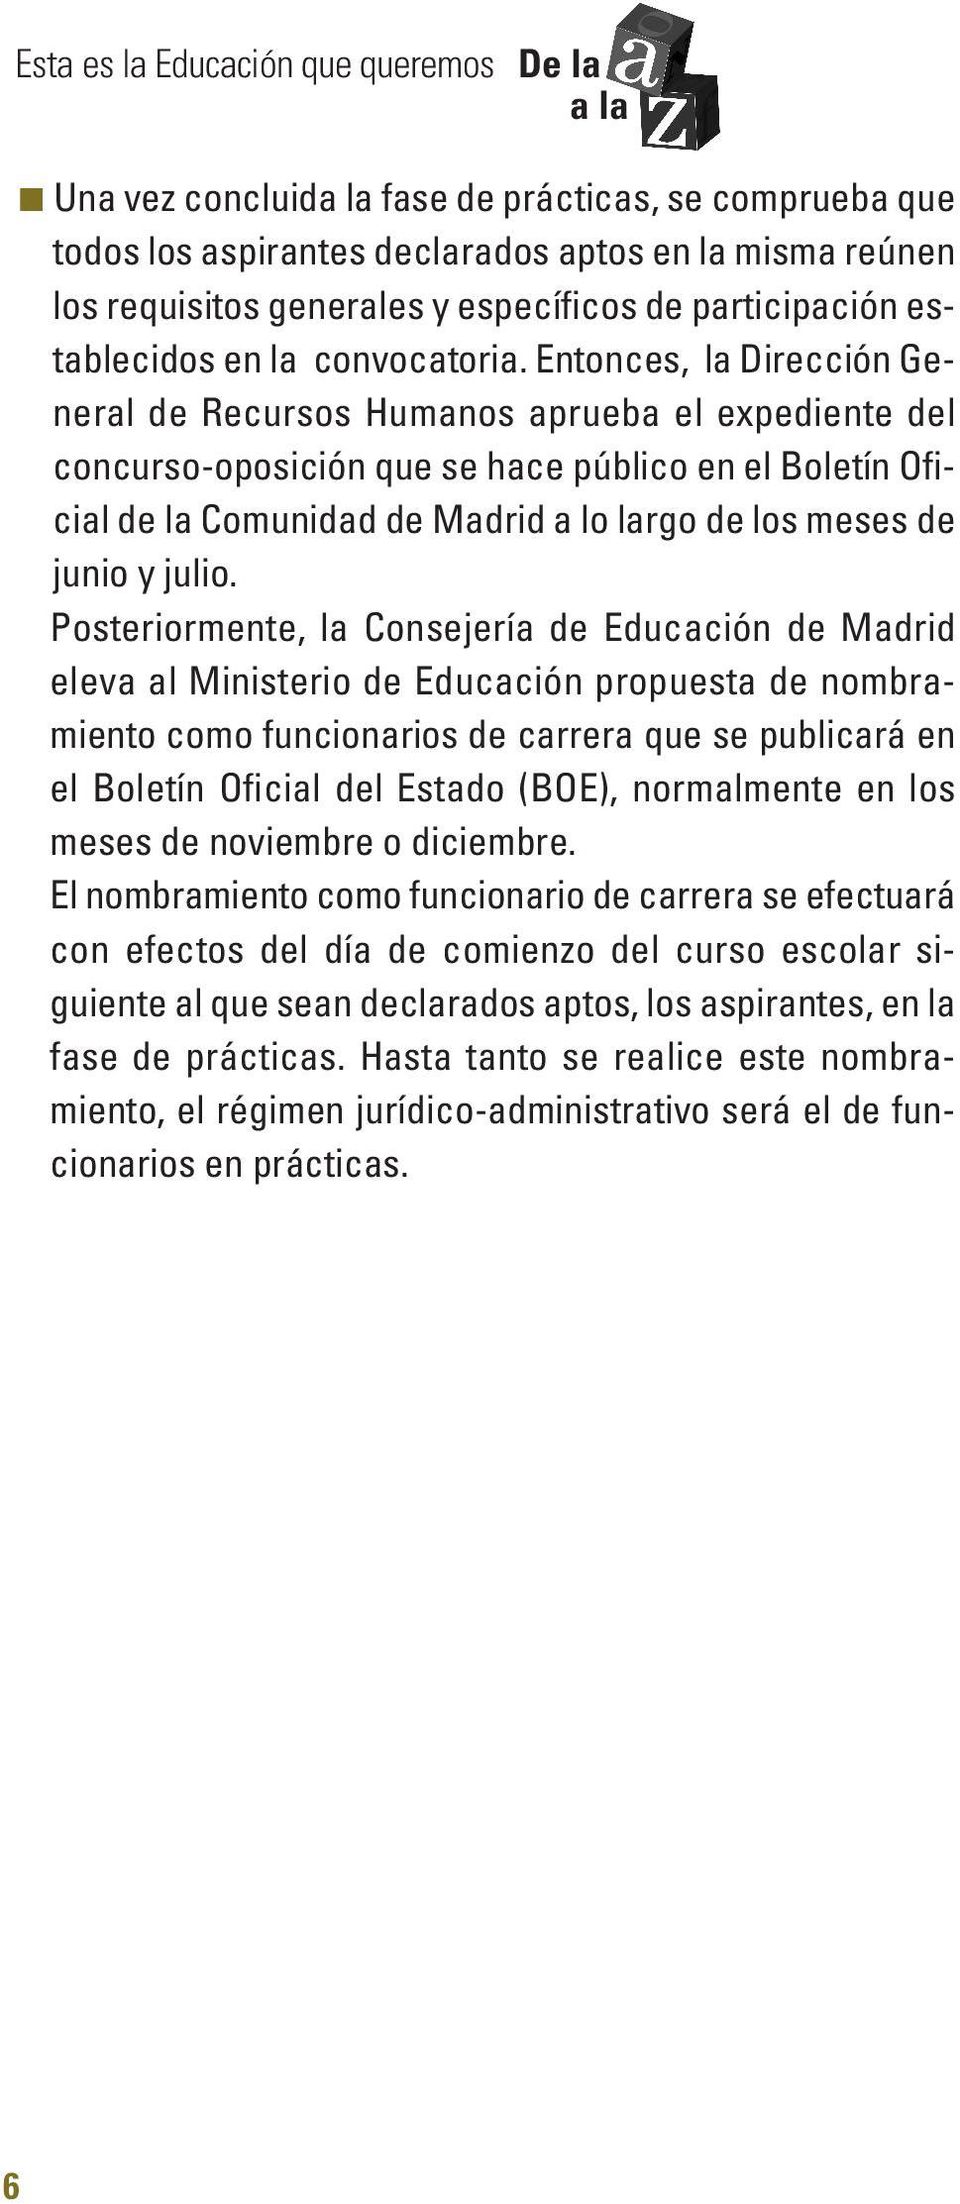 Entonces, la Dirección General de Recursos Humanos aprueba el expediente del concurso-oposición que se hace público en el Boletín Oficial de la Comunidad de Madrid a lo largo de los meses de junio y